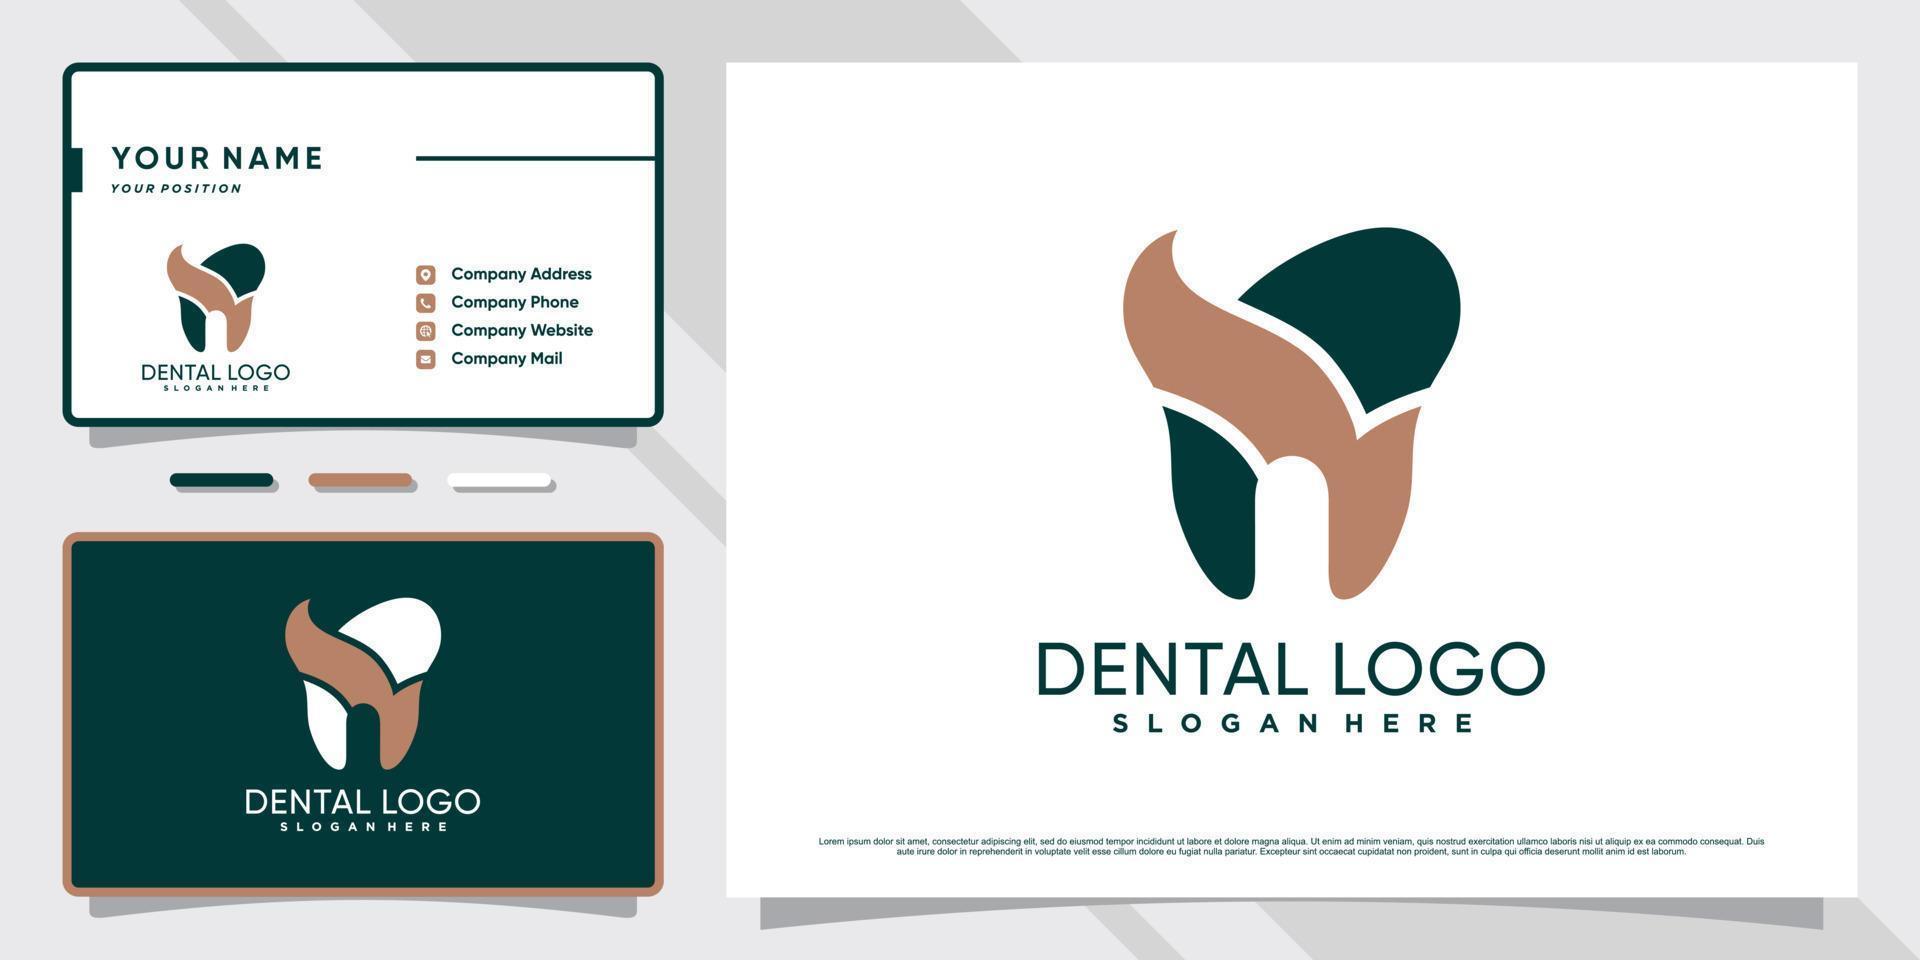 création de logo de dentiste pour clinique de soins dentaires avec concept créatif et modèle de carte de visite vecteur